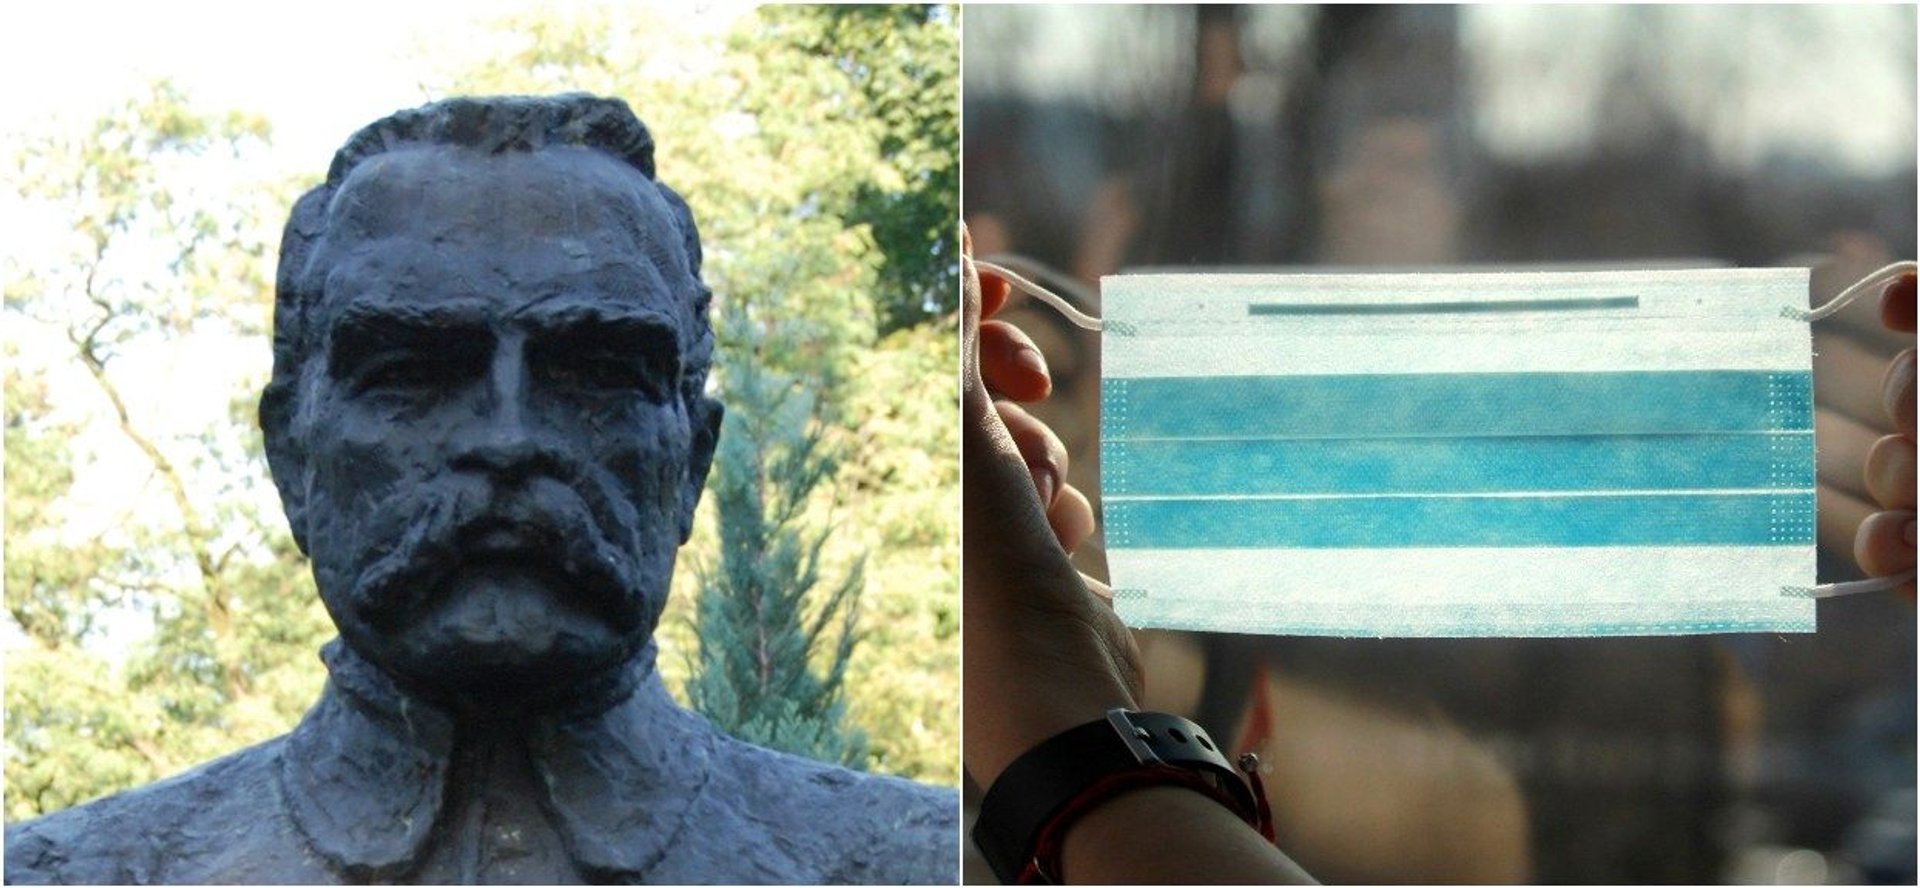 Polacy założyli maseczkę na pomnik Józefa Piłsudskiego